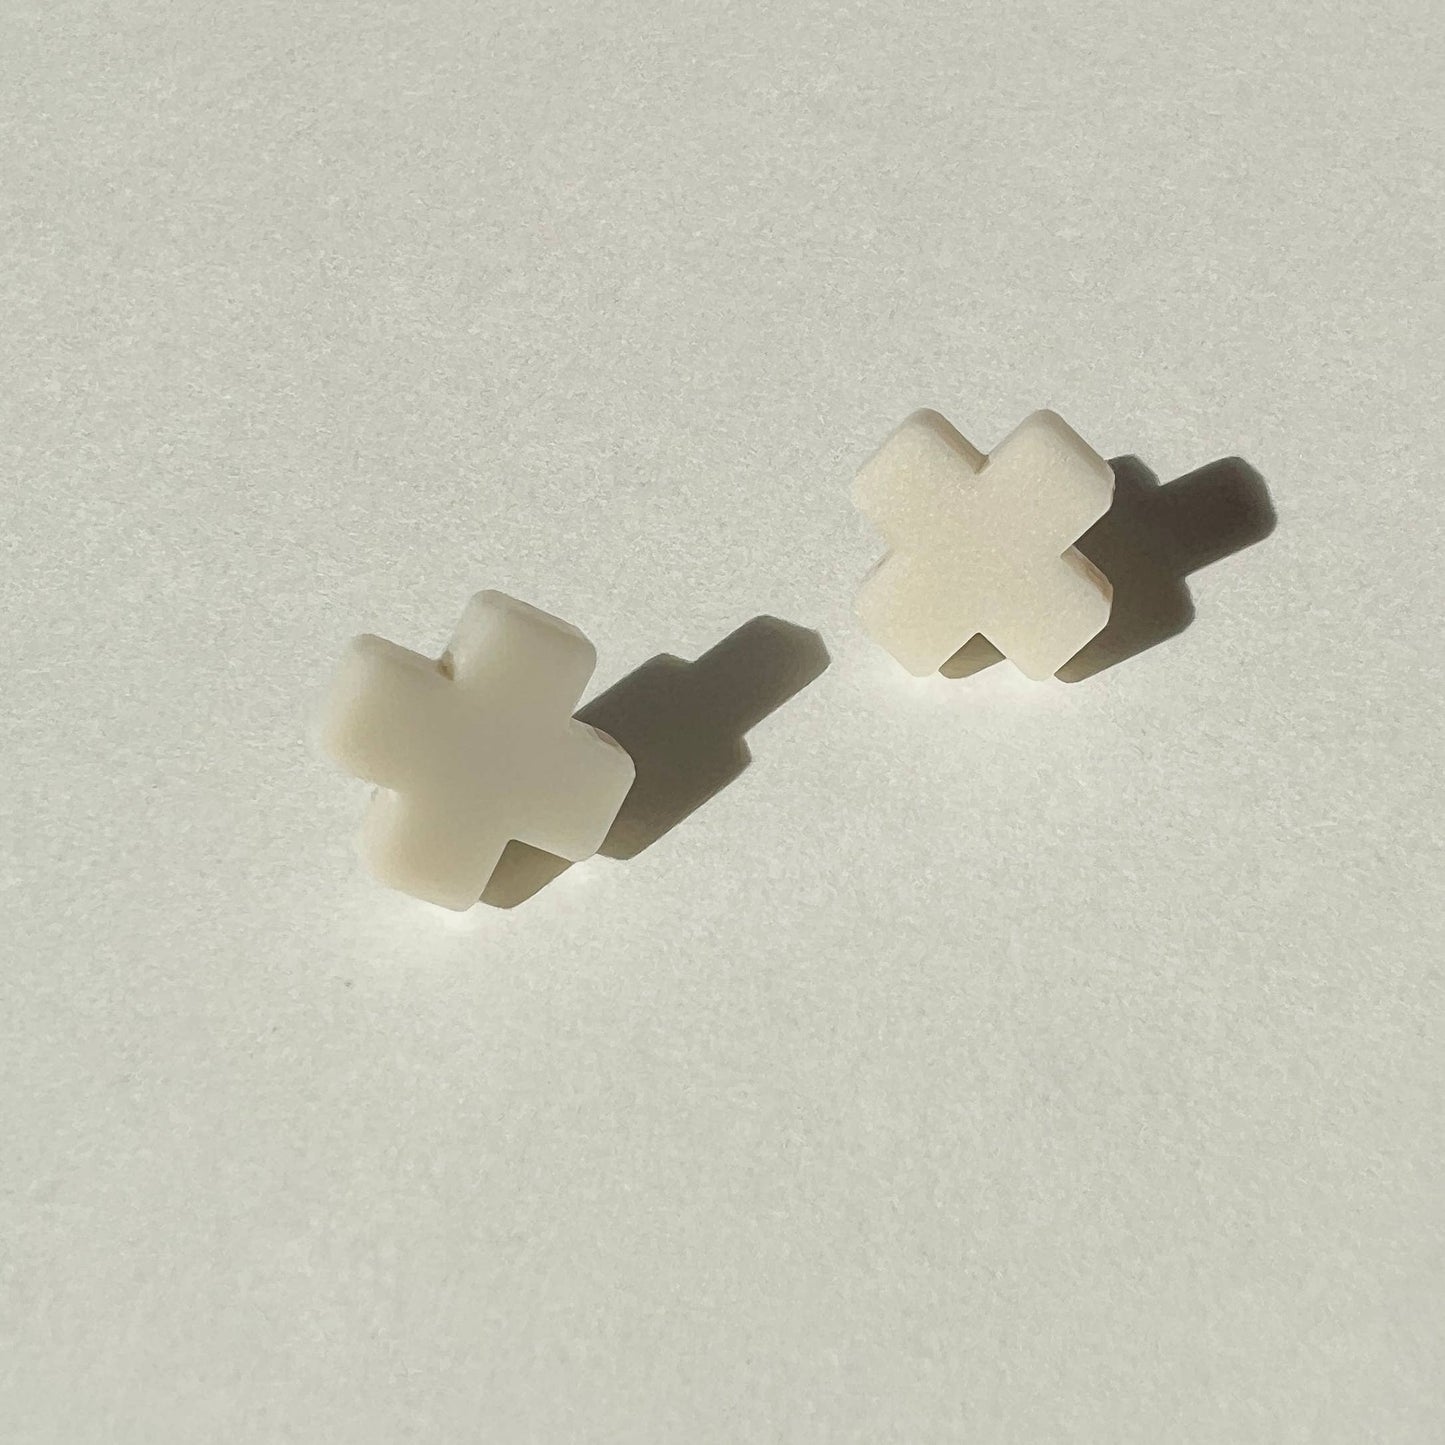 Beige Cross Stud Earrings - Small Cross Earrings, Minimalist